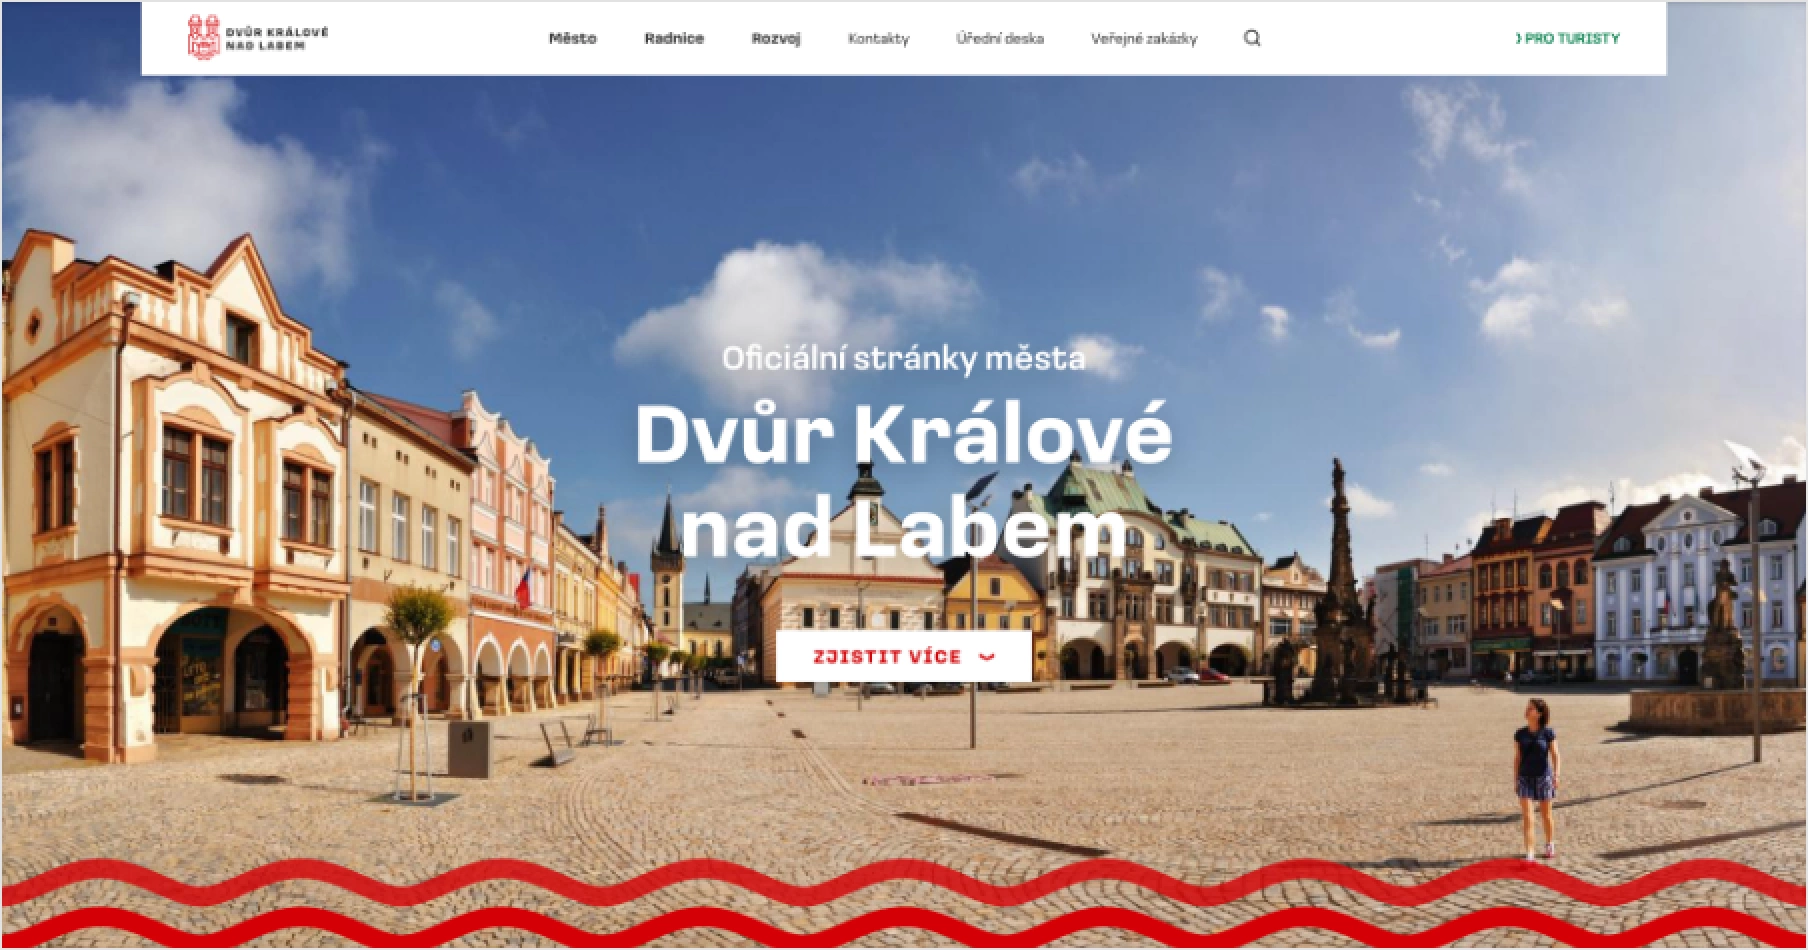 Concept of webpage of Dvůr Králové nad Labem